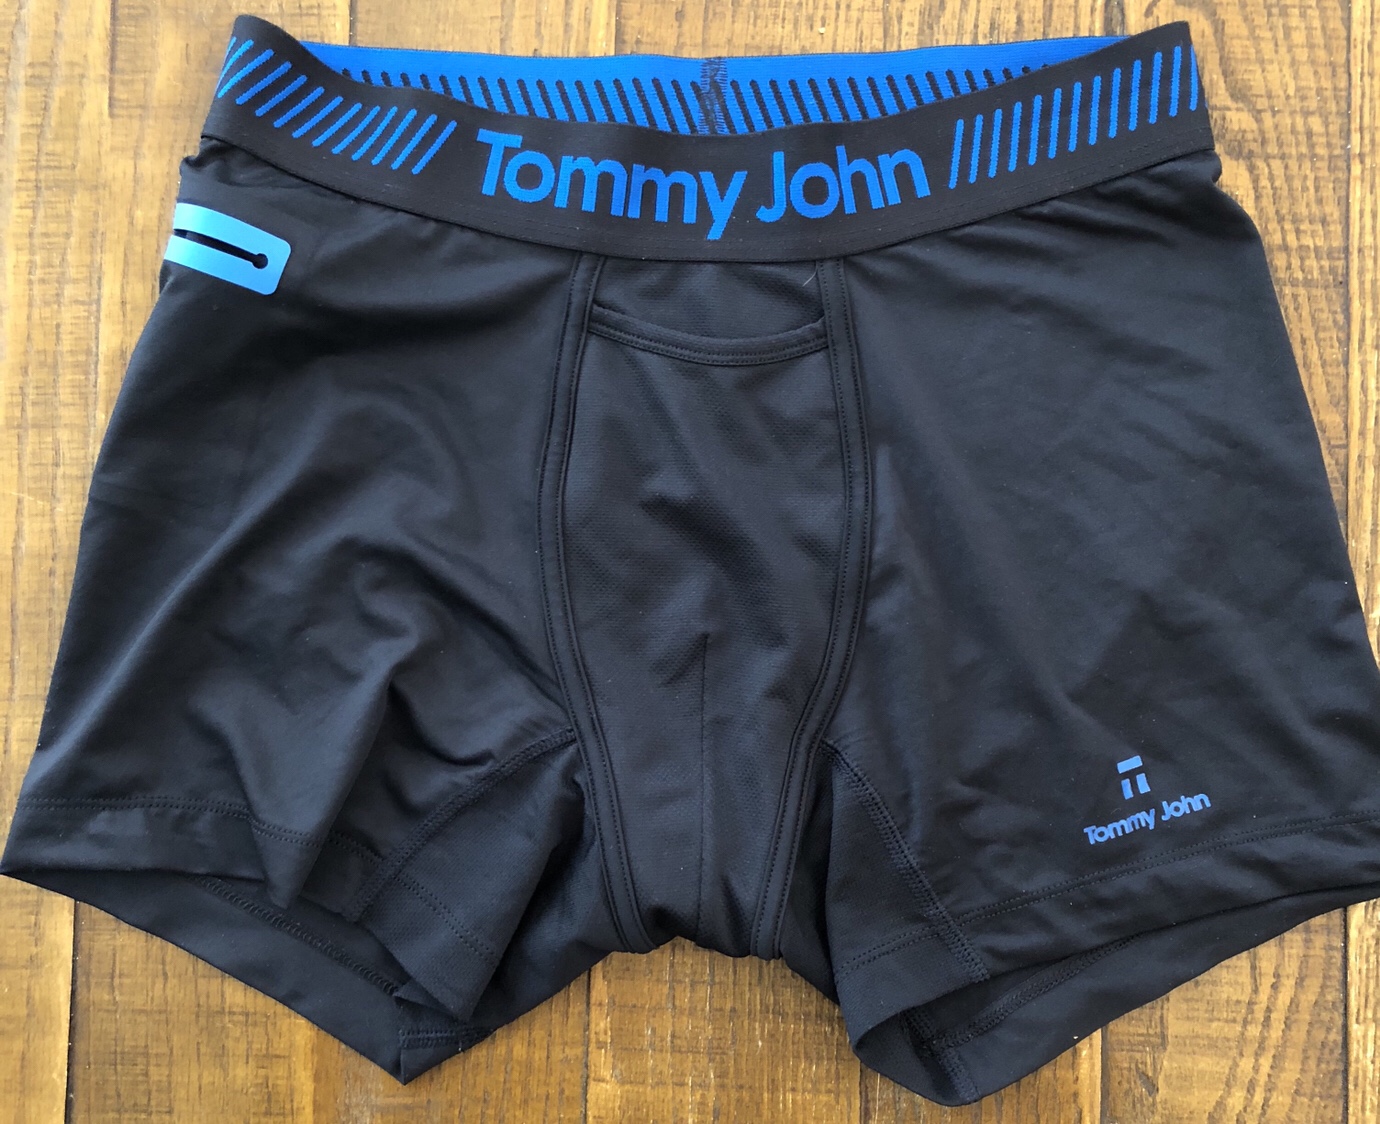 tommy john sport underwear